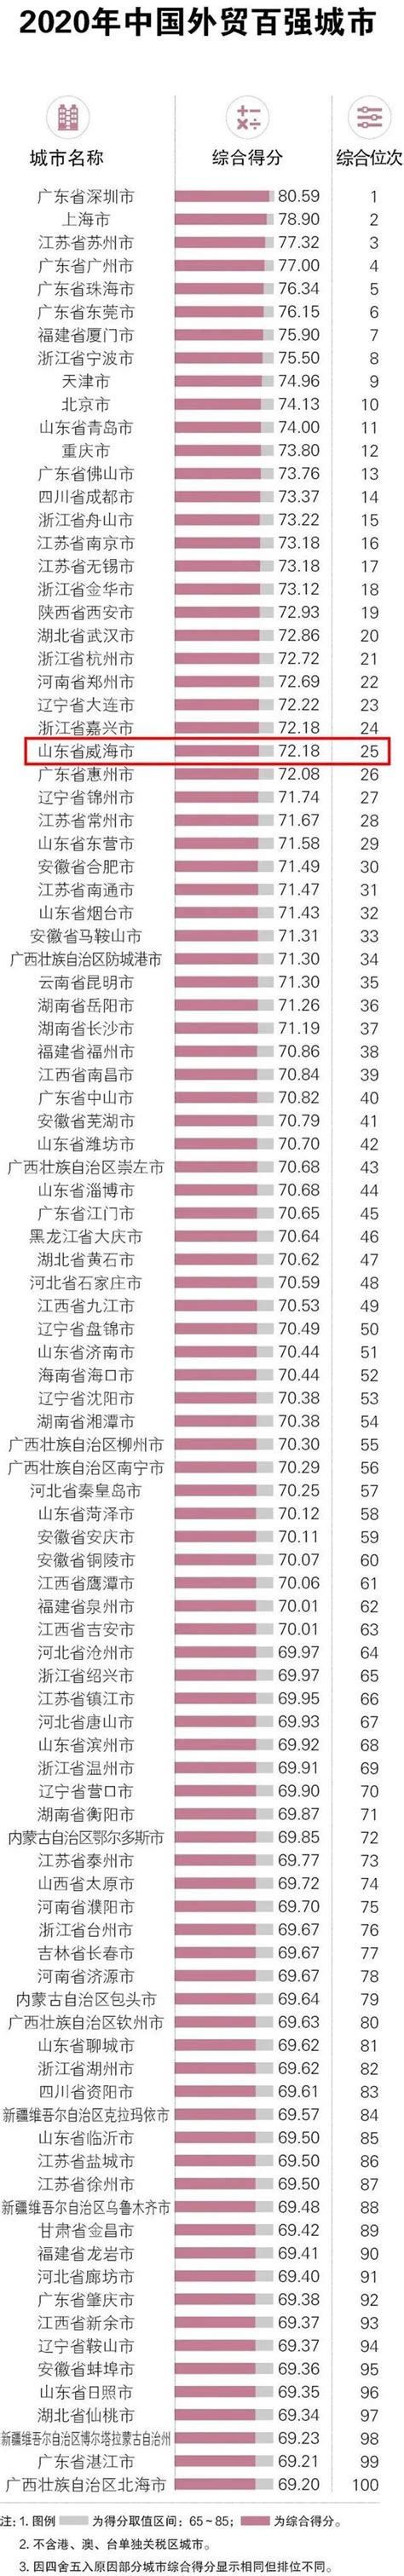 2020年山东省地级市生产总值排行榜：威海人口老龄化问题最严峻（附年榜TOP16详单）_智研咨询